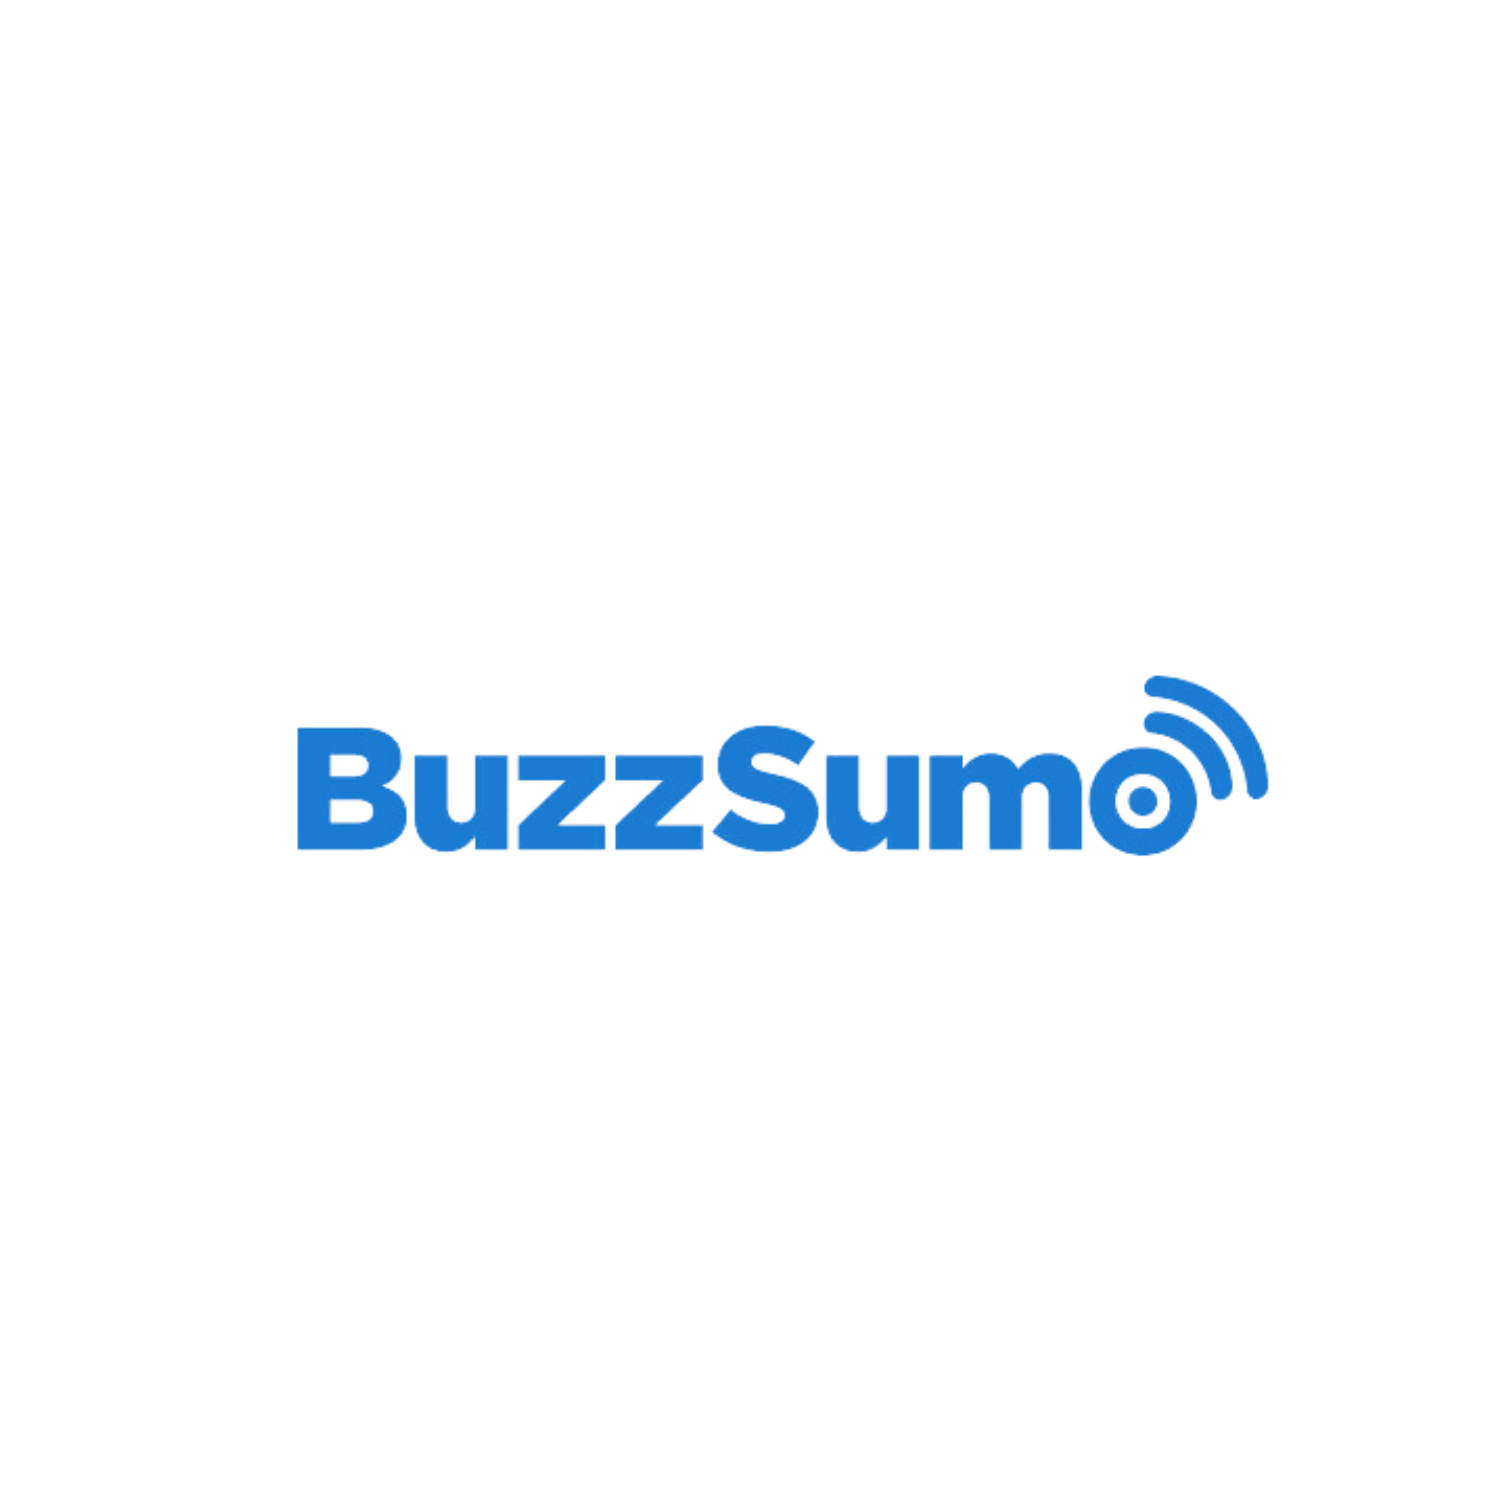 buzzsumo logo